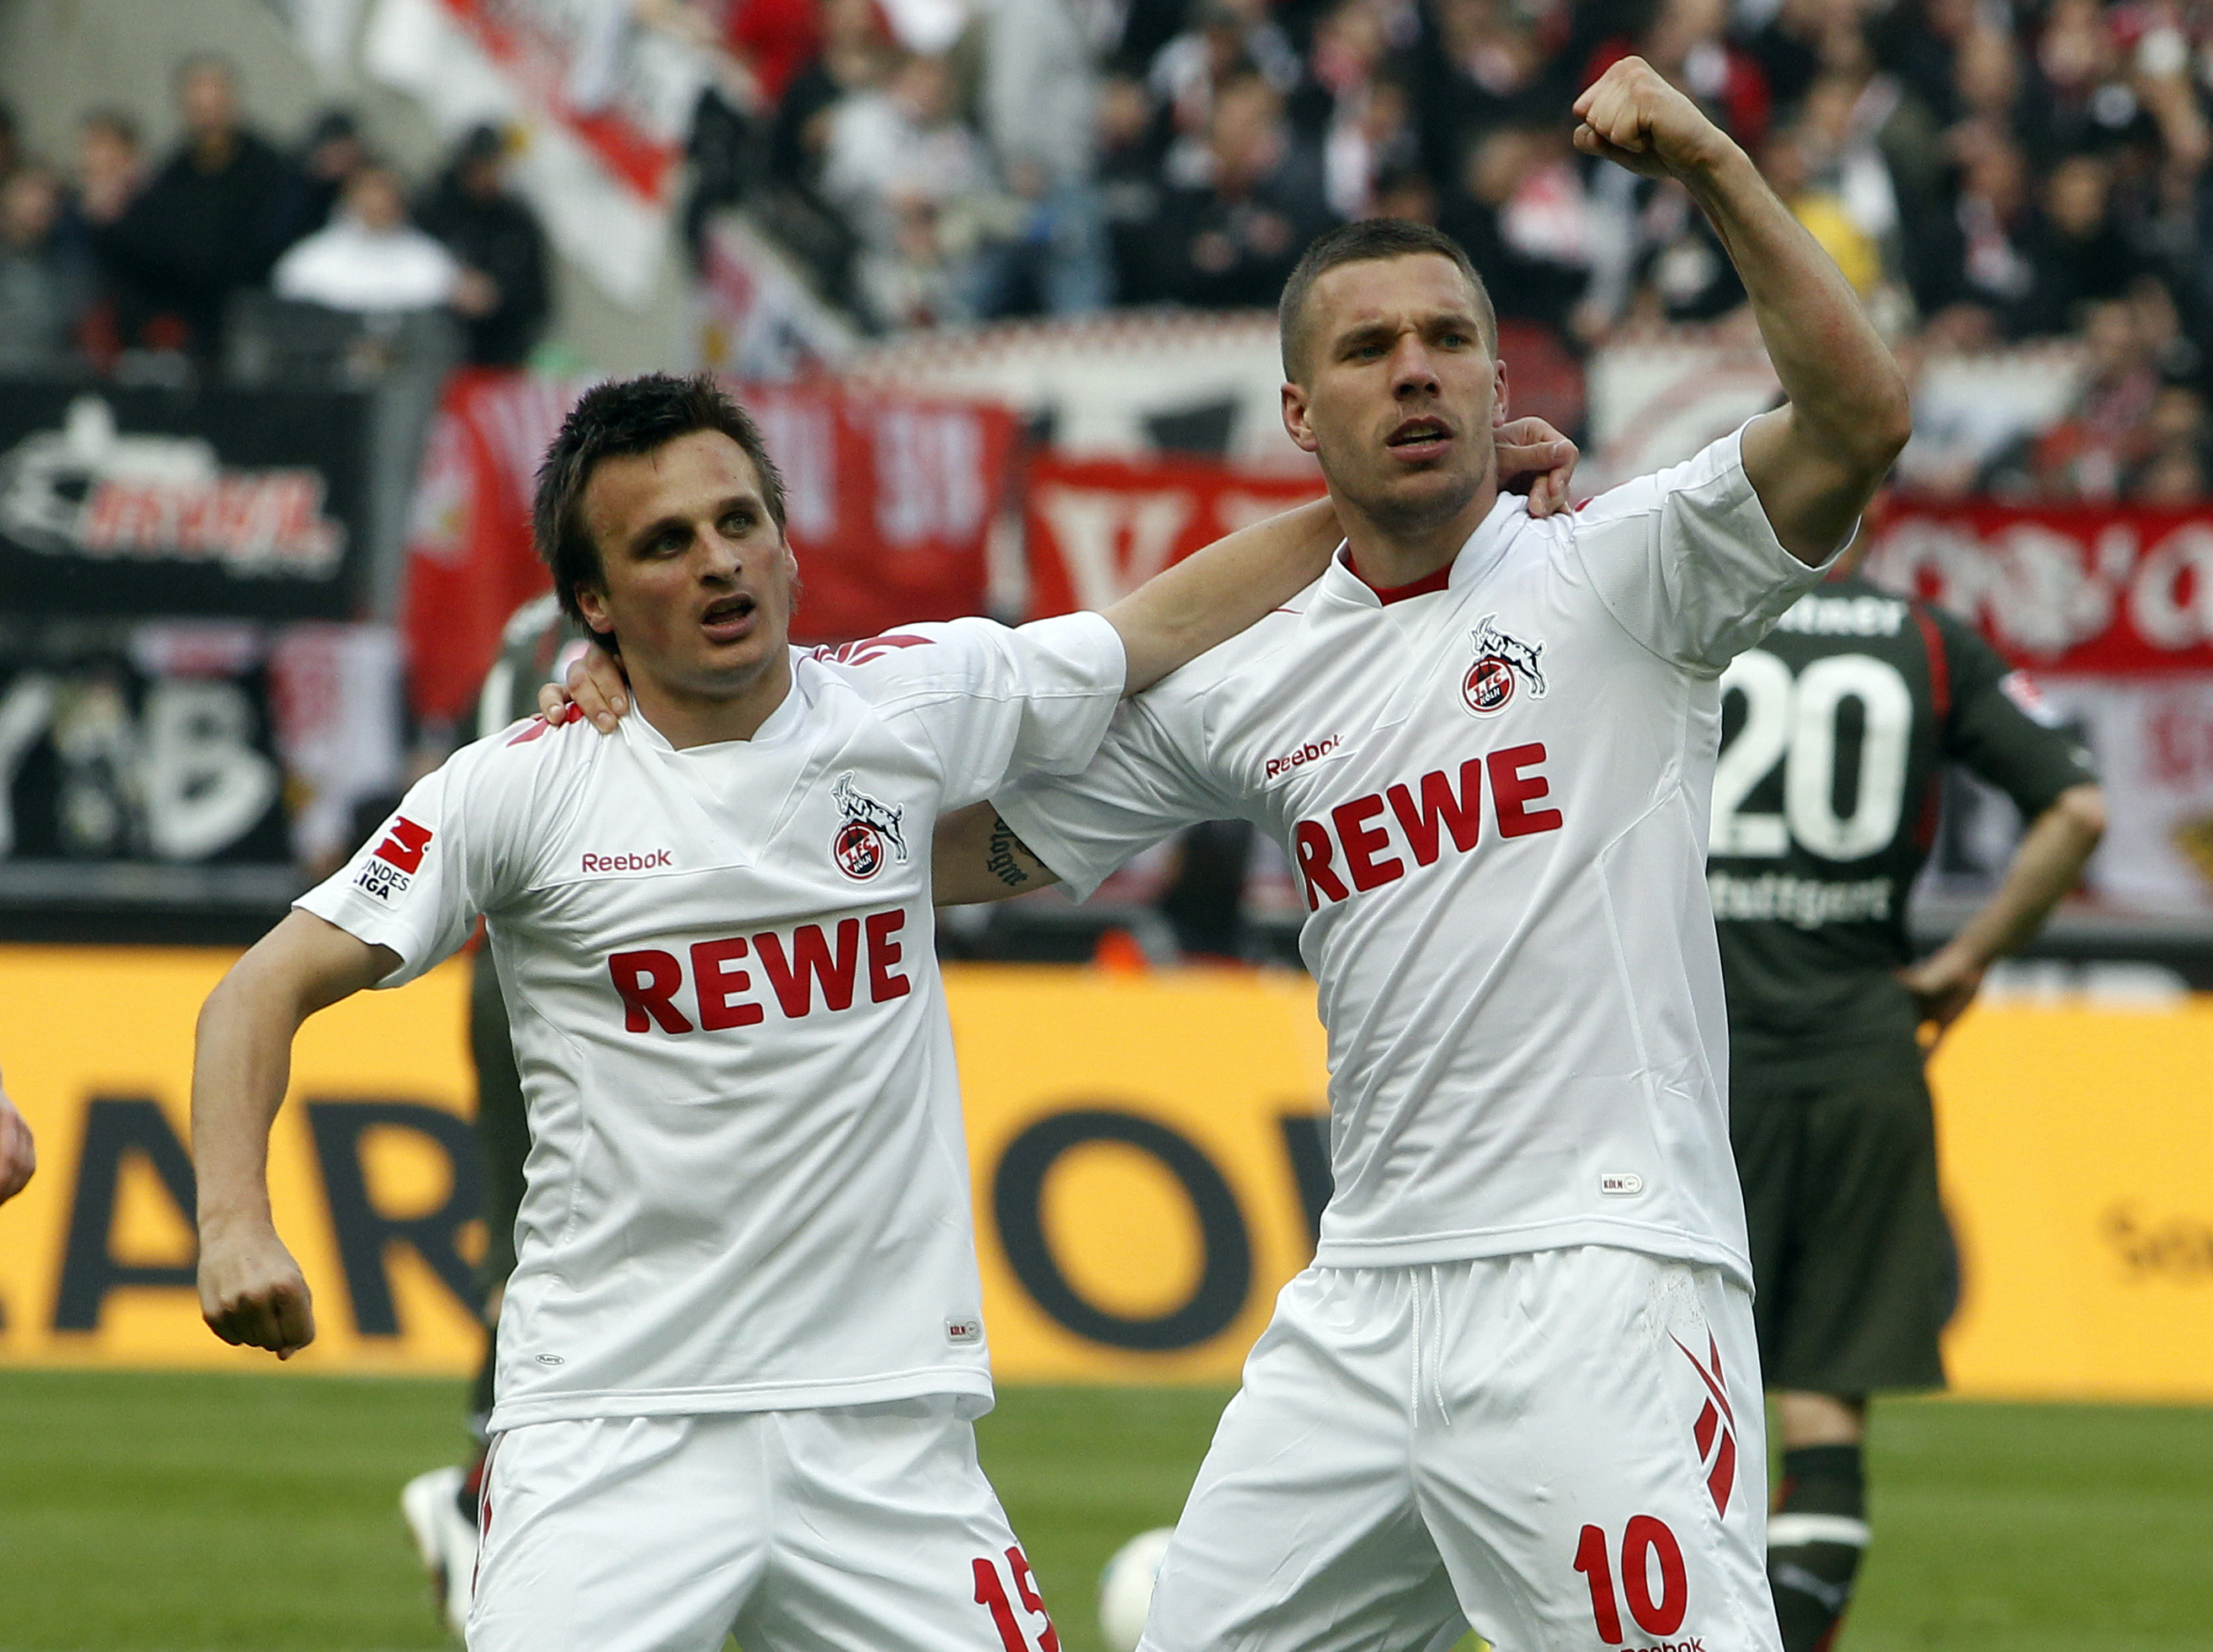 Trots att det har gått tungt för FC Köln har Podolski varit het. 15 mål på 18 matcher talar sitt tydliga språk.